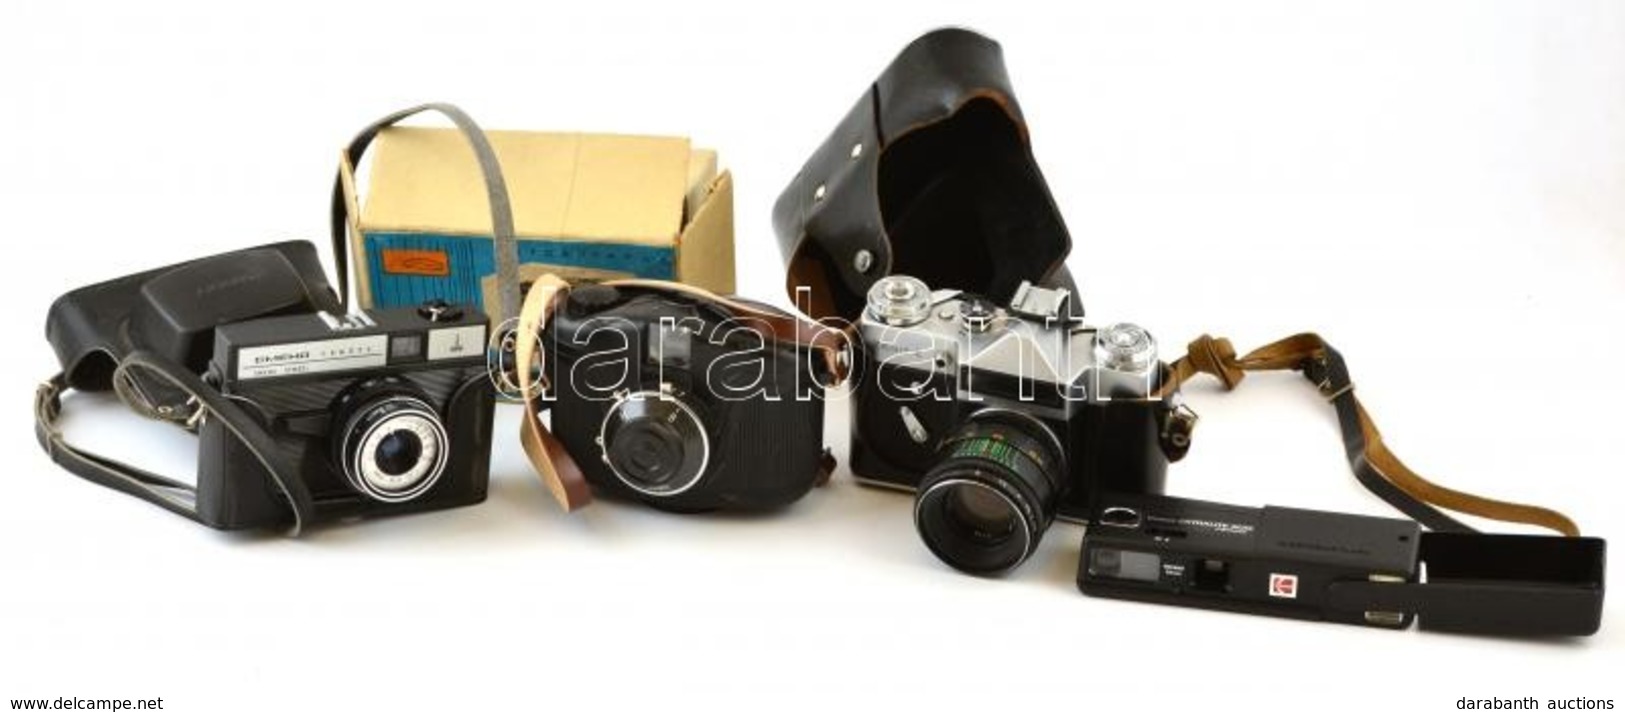 4 Db Fényképezőgép: Zenit-E Helios-44-2 Objektívvel, Skolnyik Fényképezőgép Eredeti Dobozában, Smena Symbol Fényképezőgé - Fotoapparate